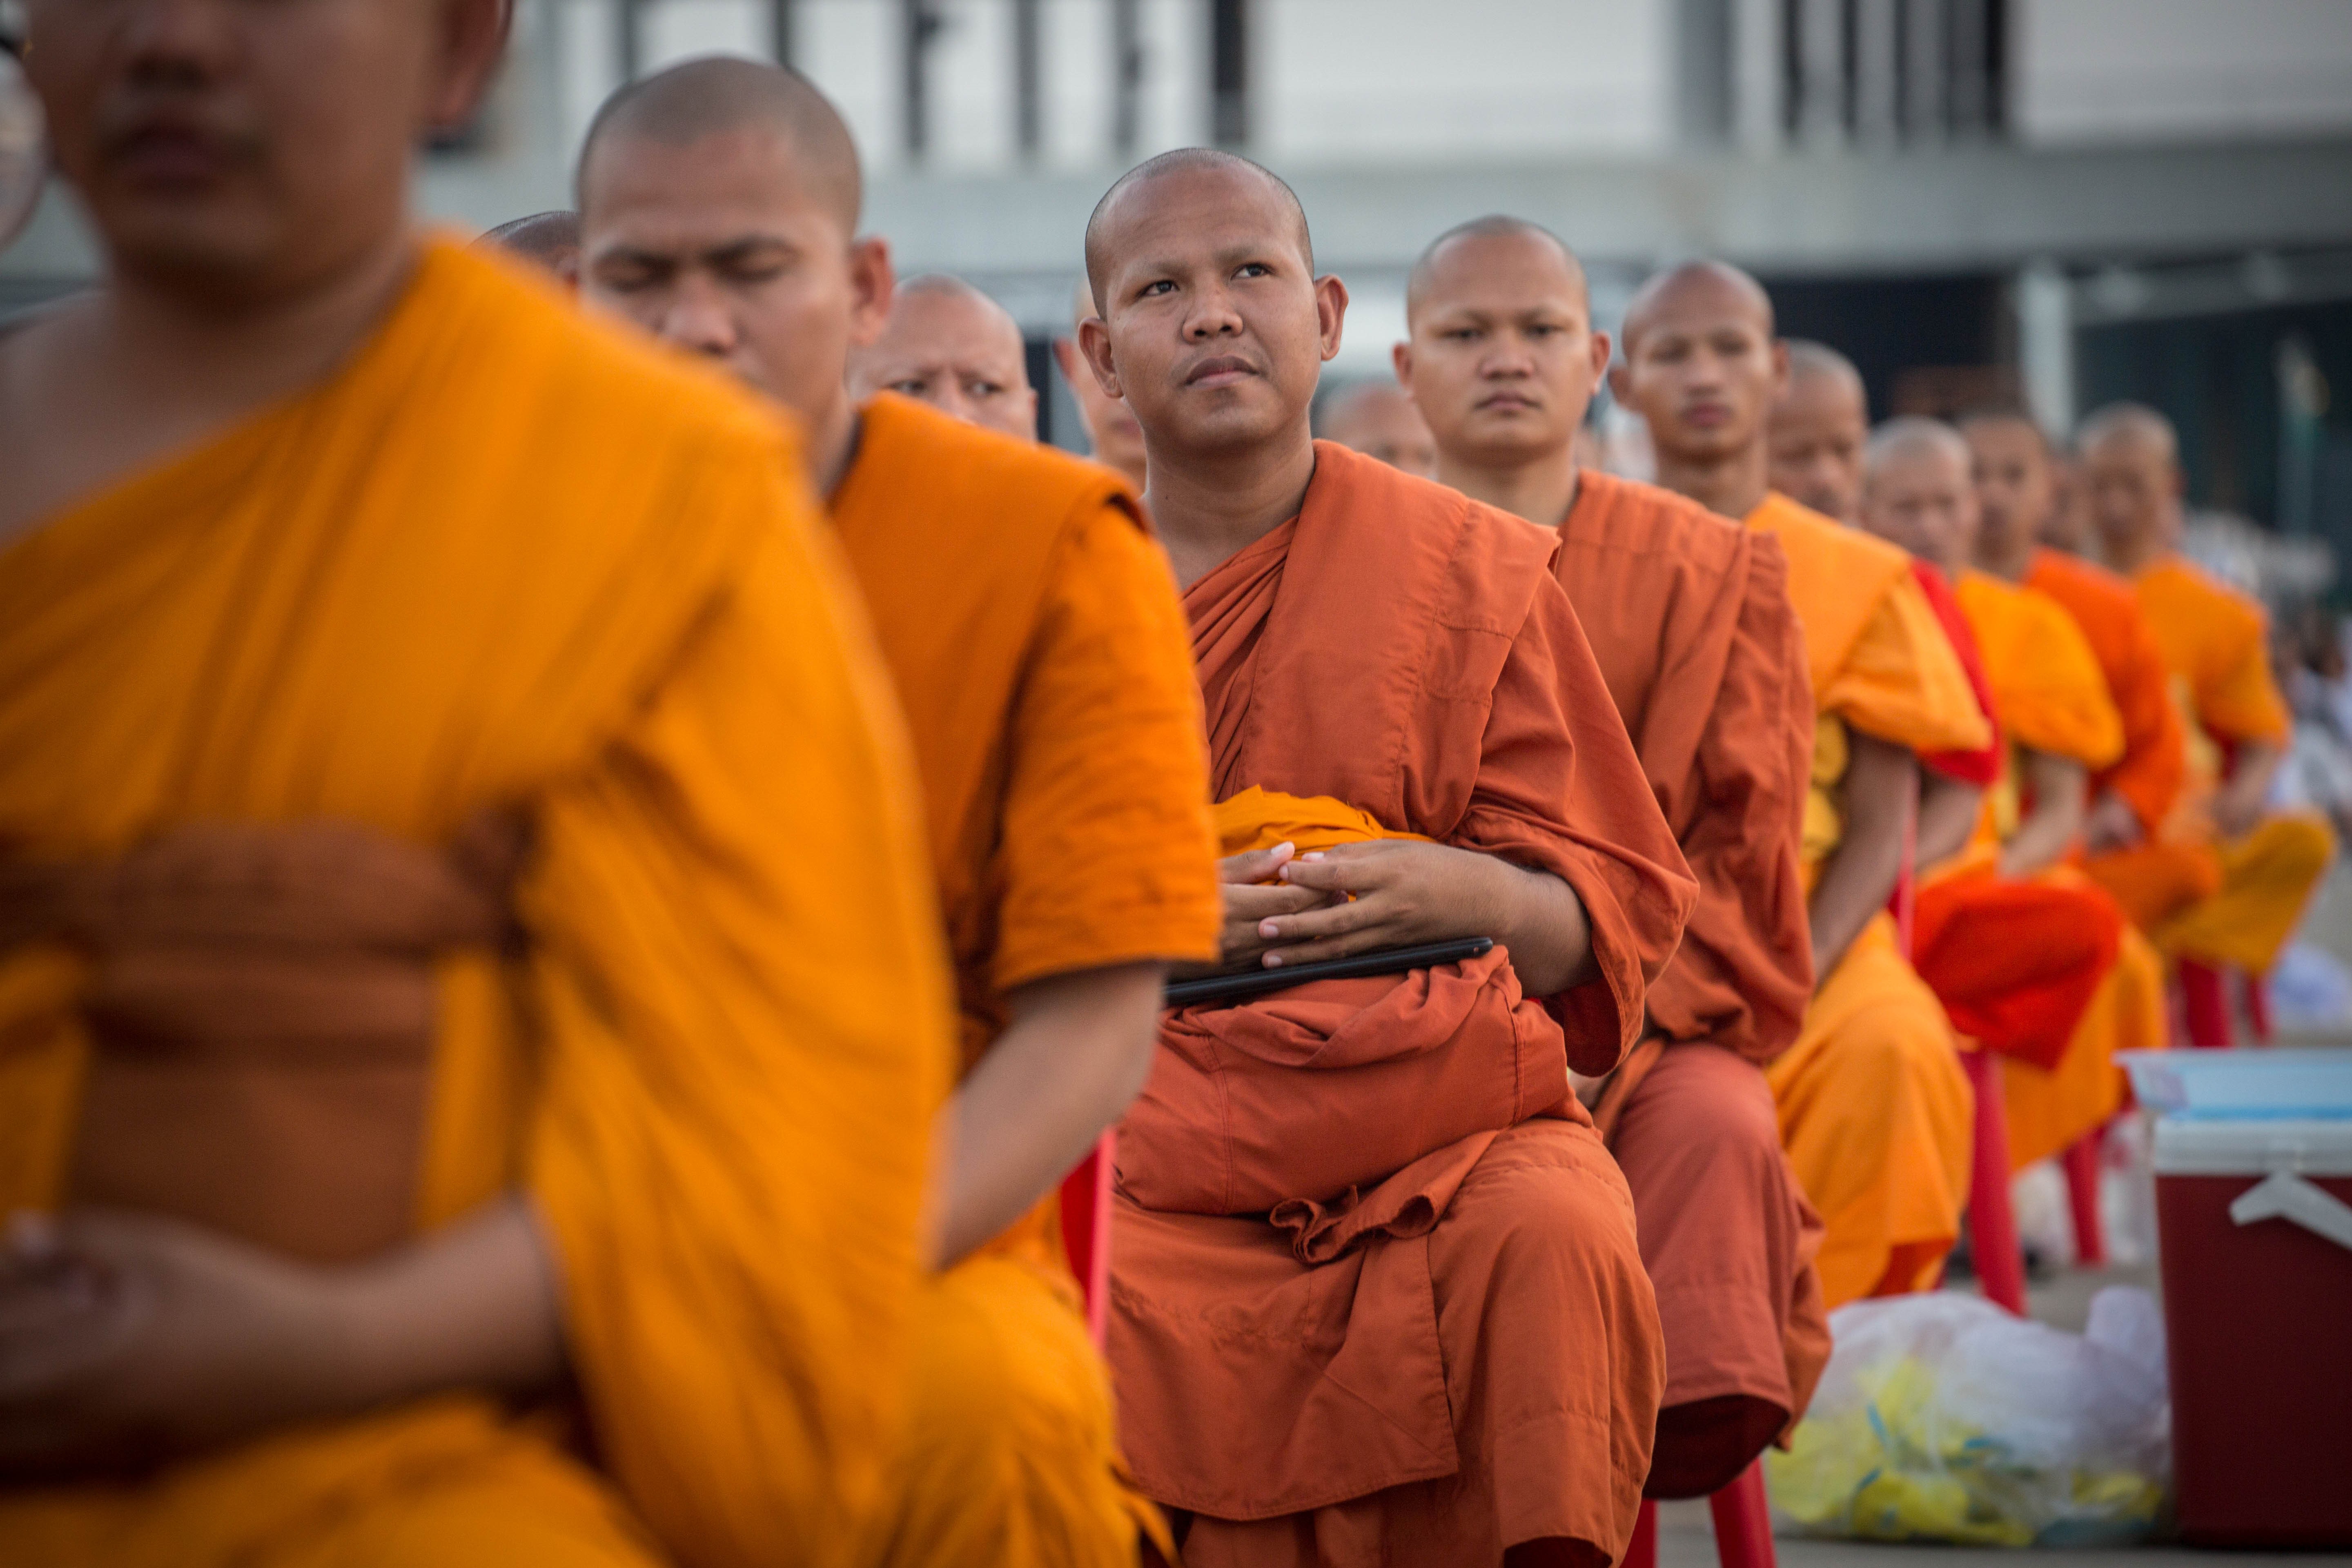 Thai szerzetesek buktak meg a drogteszten, elvitték őket a templomból -  Blikk